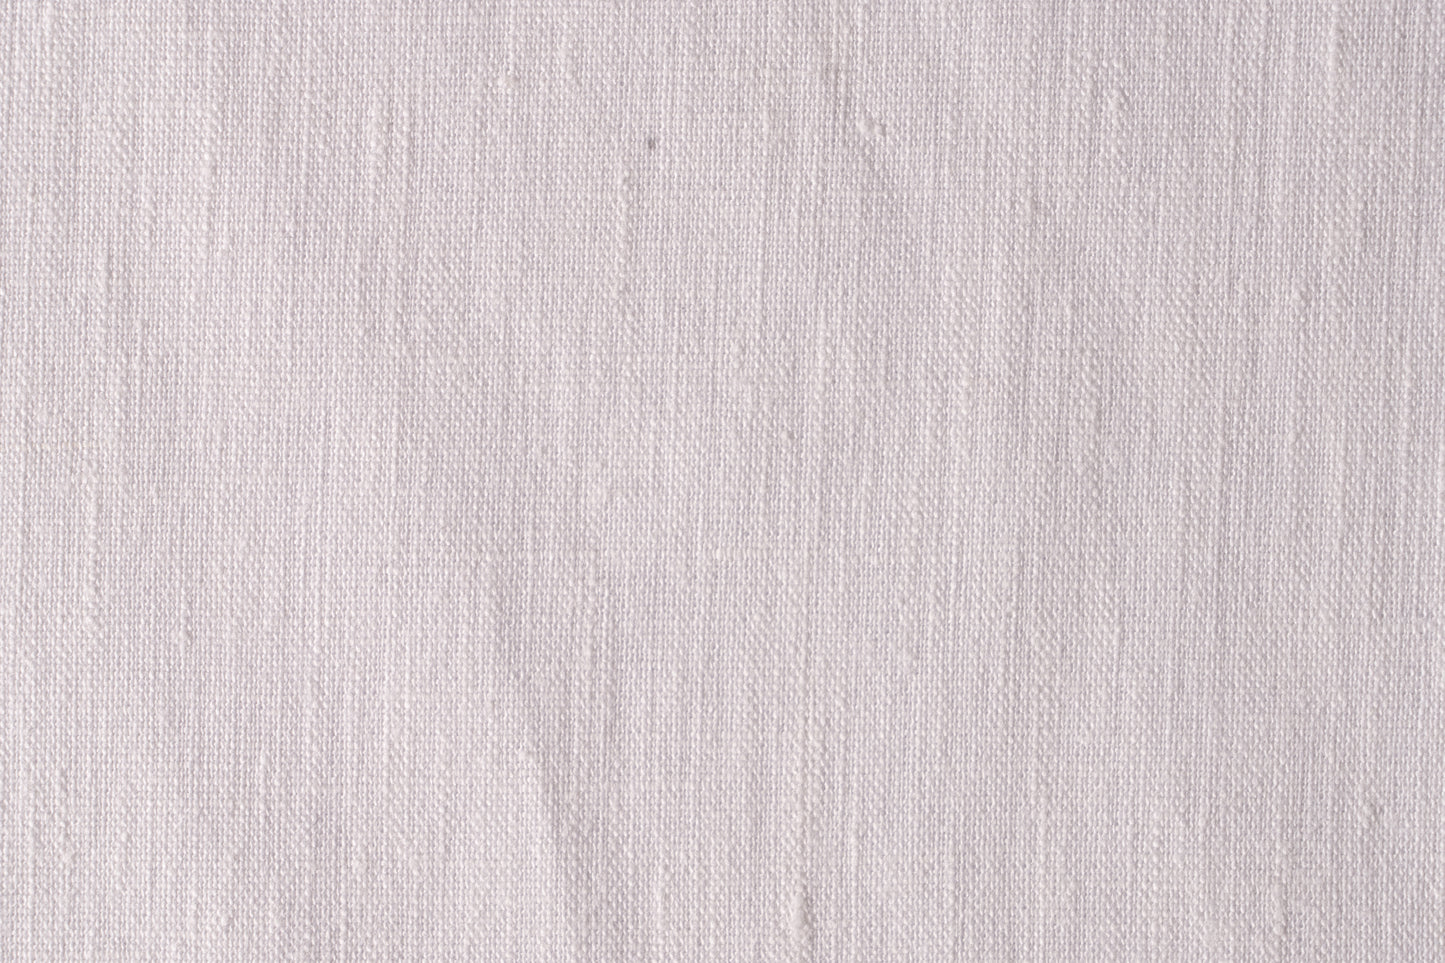 Softened Linen Wool Blend Fabric, Medium Weight Light Gray Linen